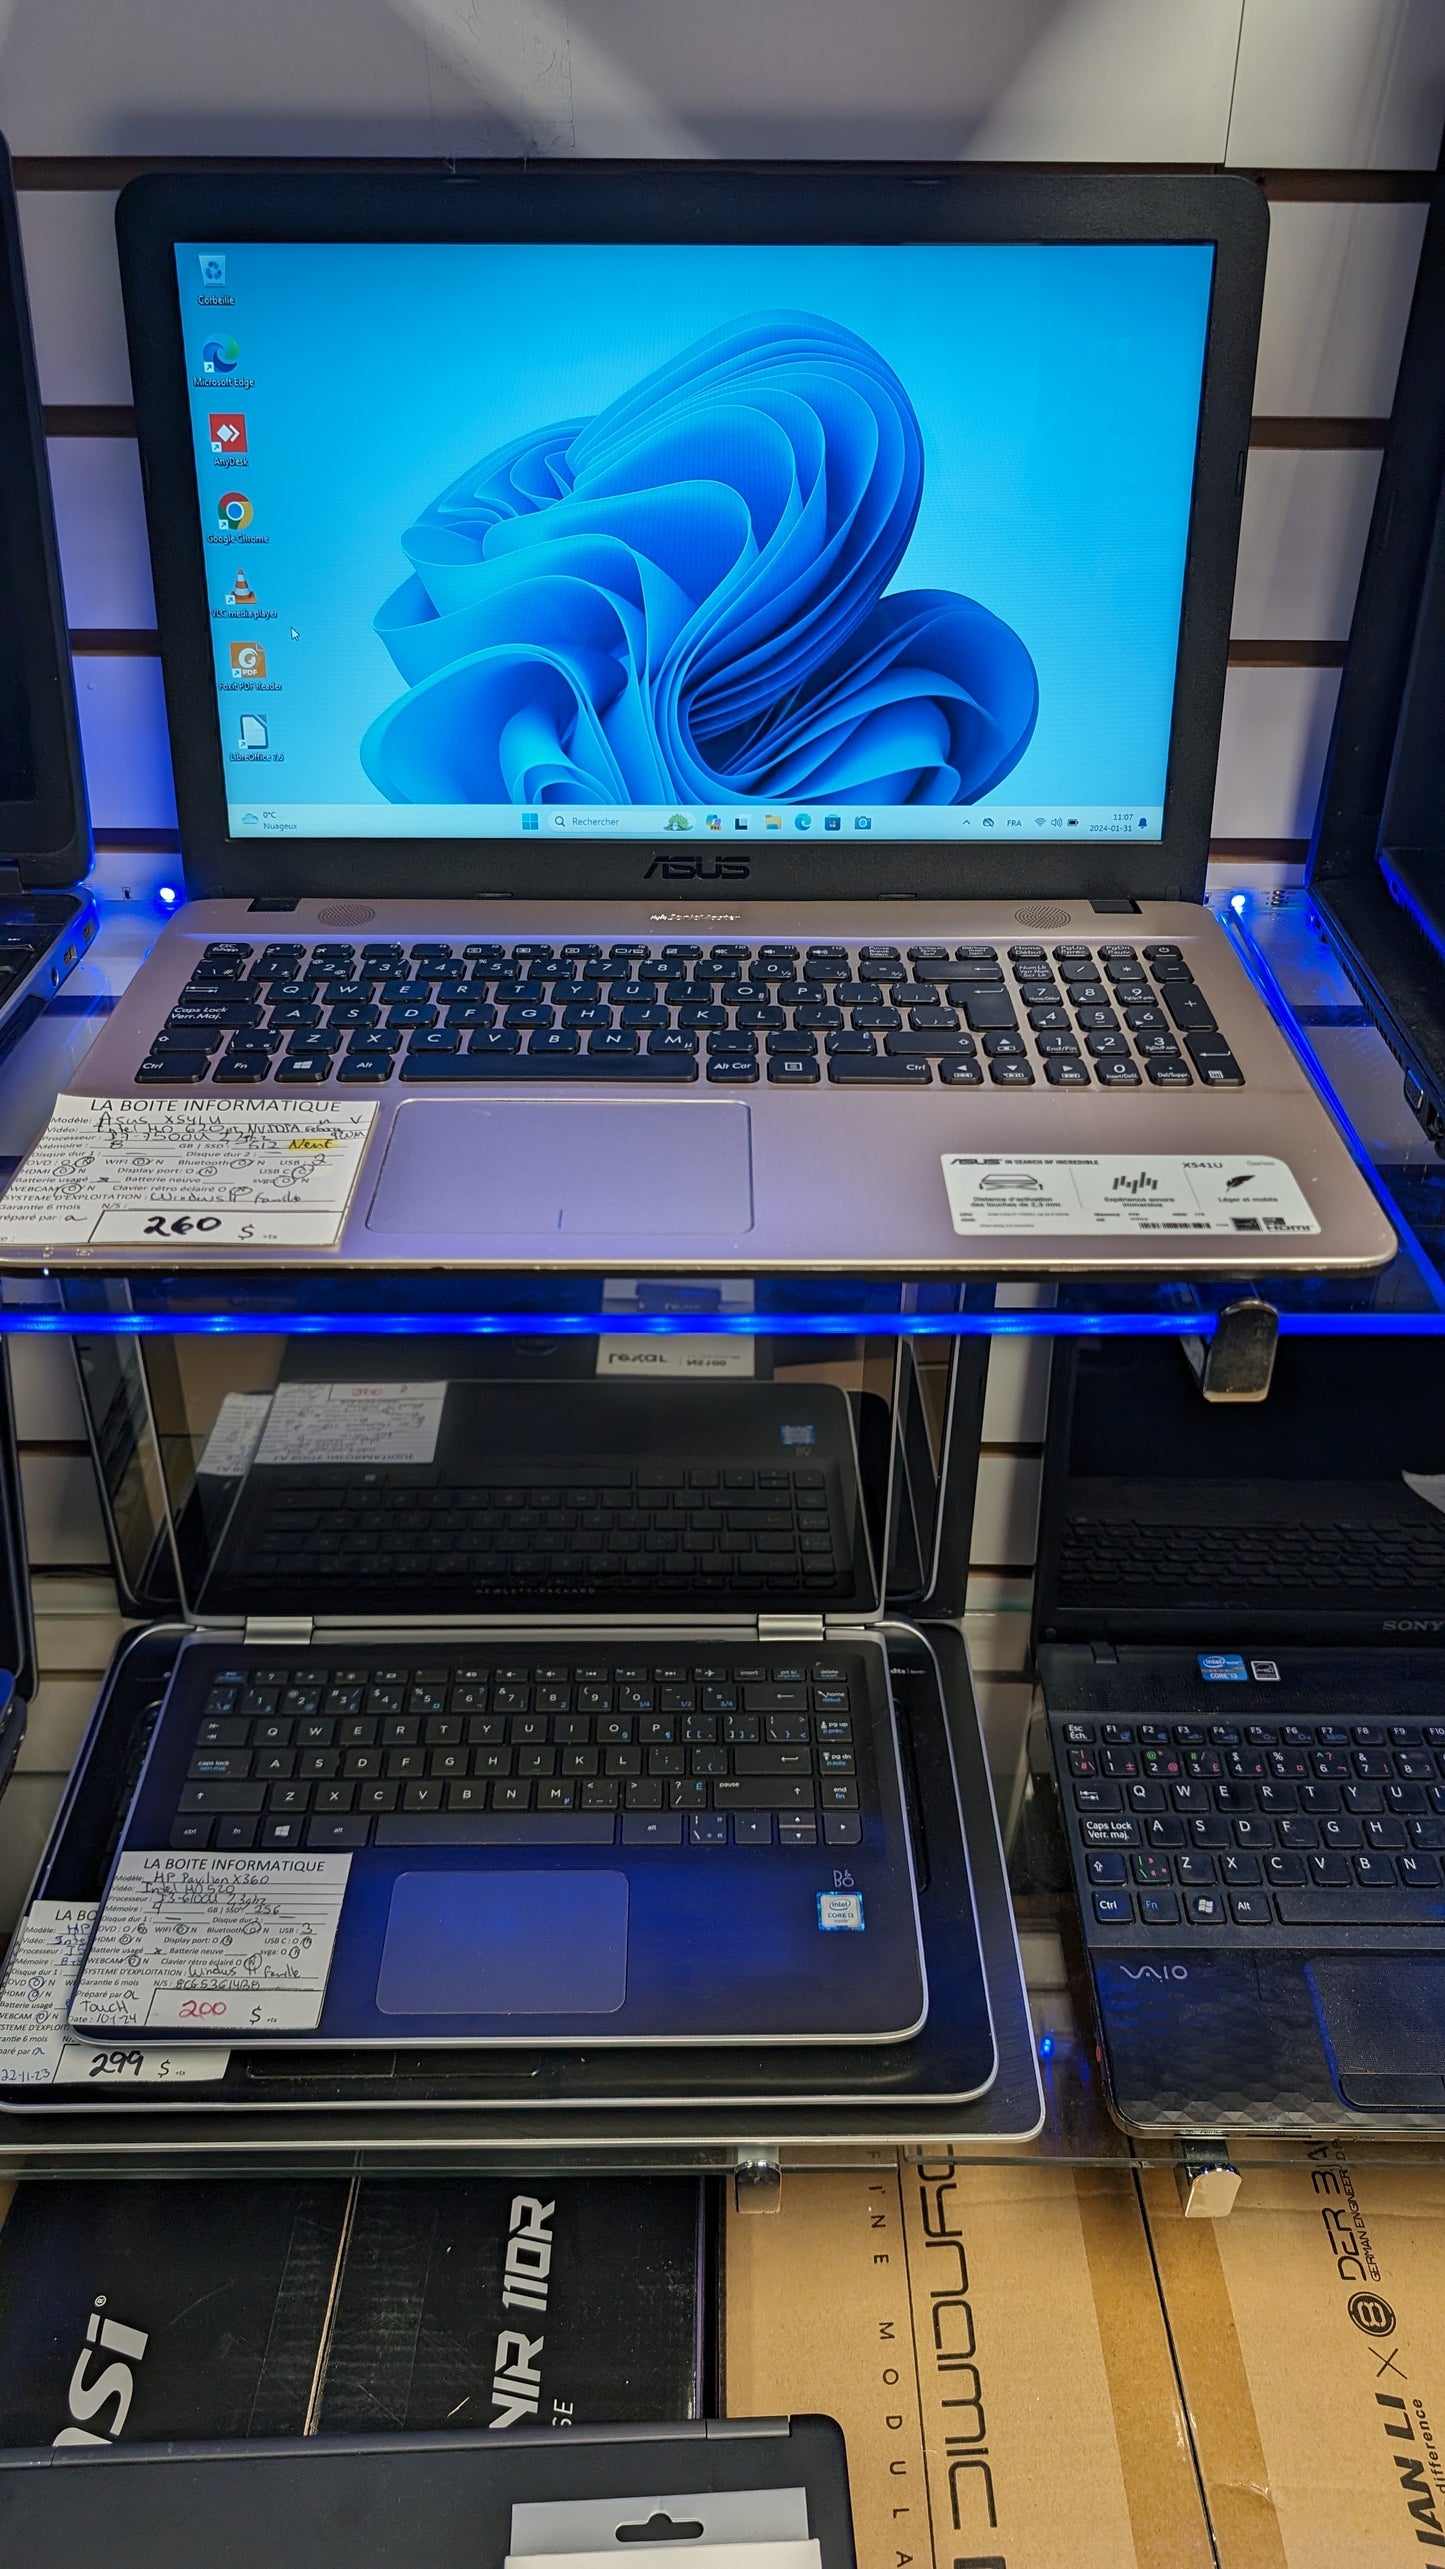 Laptop ASUS X541U SSD NEUF 512Go i5-7500U 2,7GHz 8Go 15,6po HDMI garantie 6 mois + tx